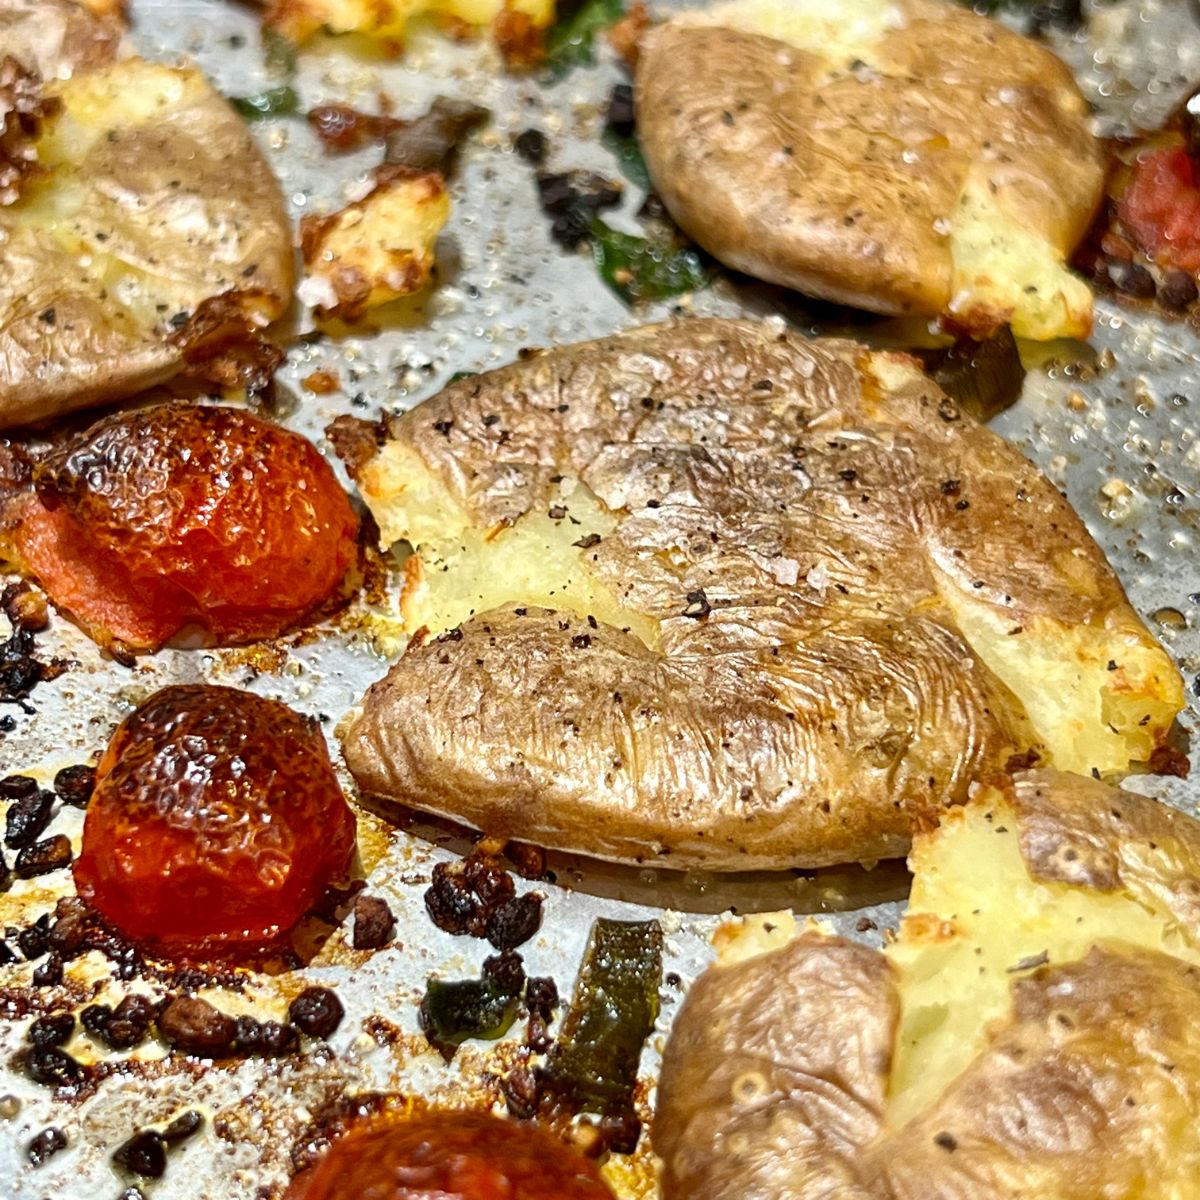 Garlic herb smashed potatoes on a sheet pan